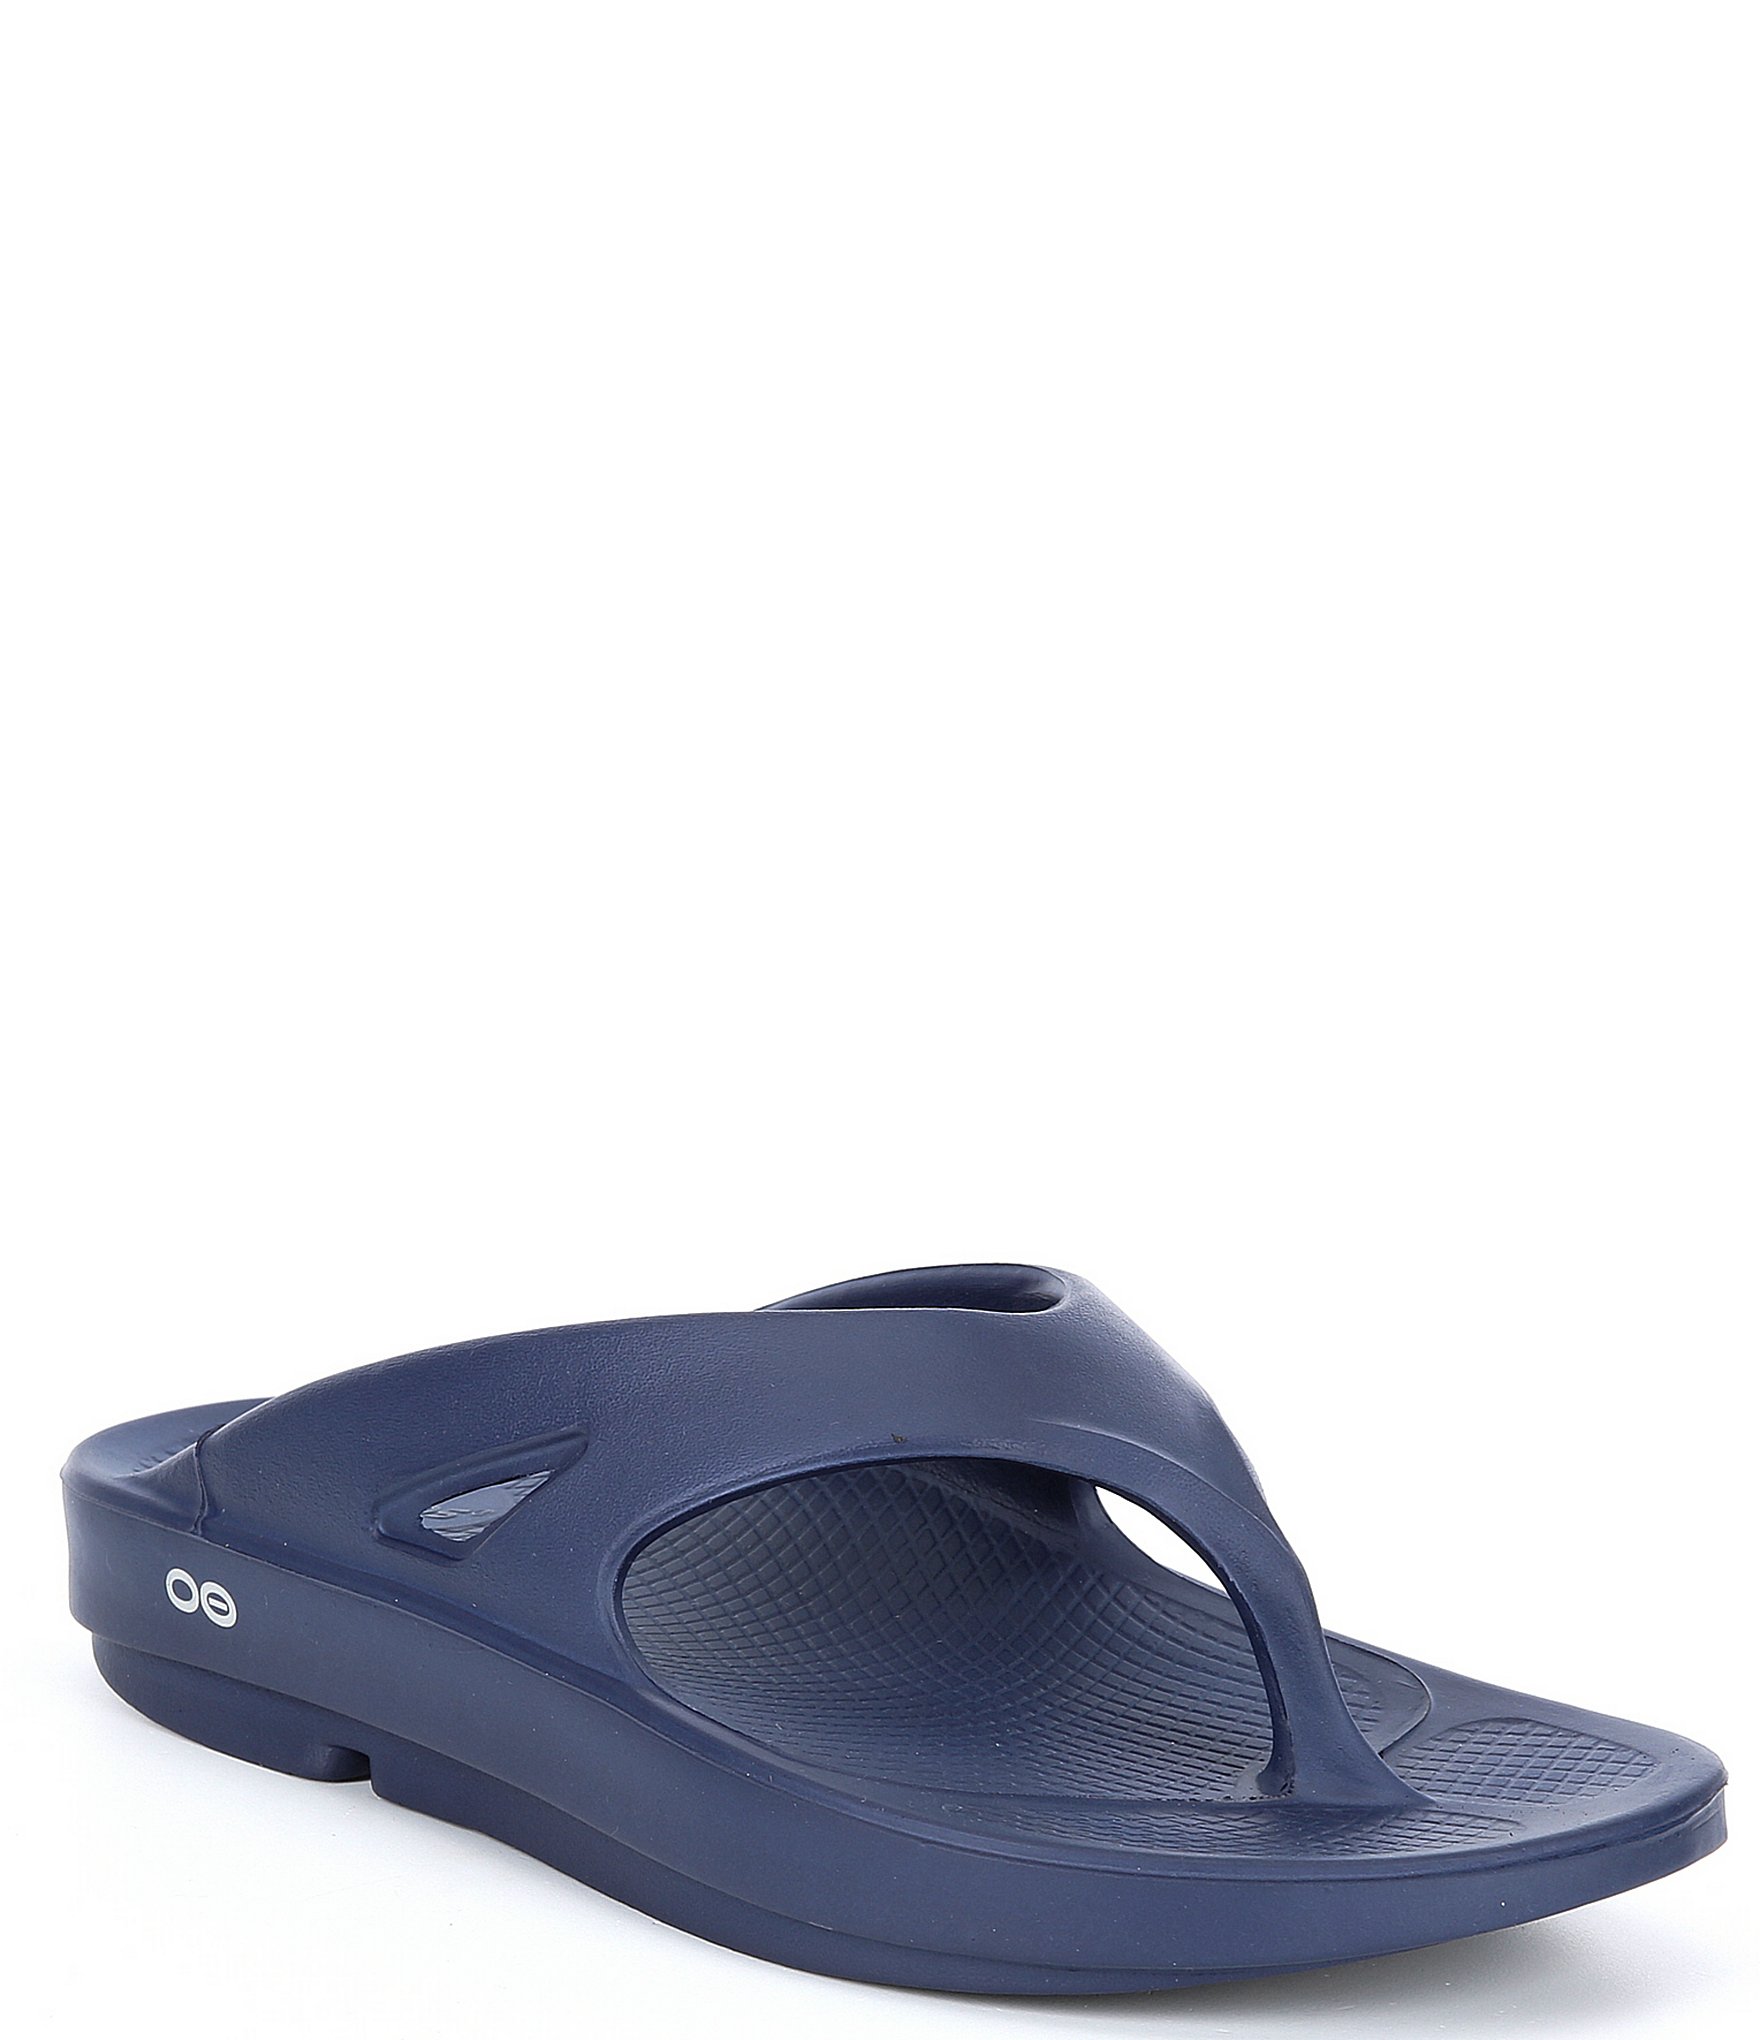 OOFOS Men's Comfort Sandals | Dillard's